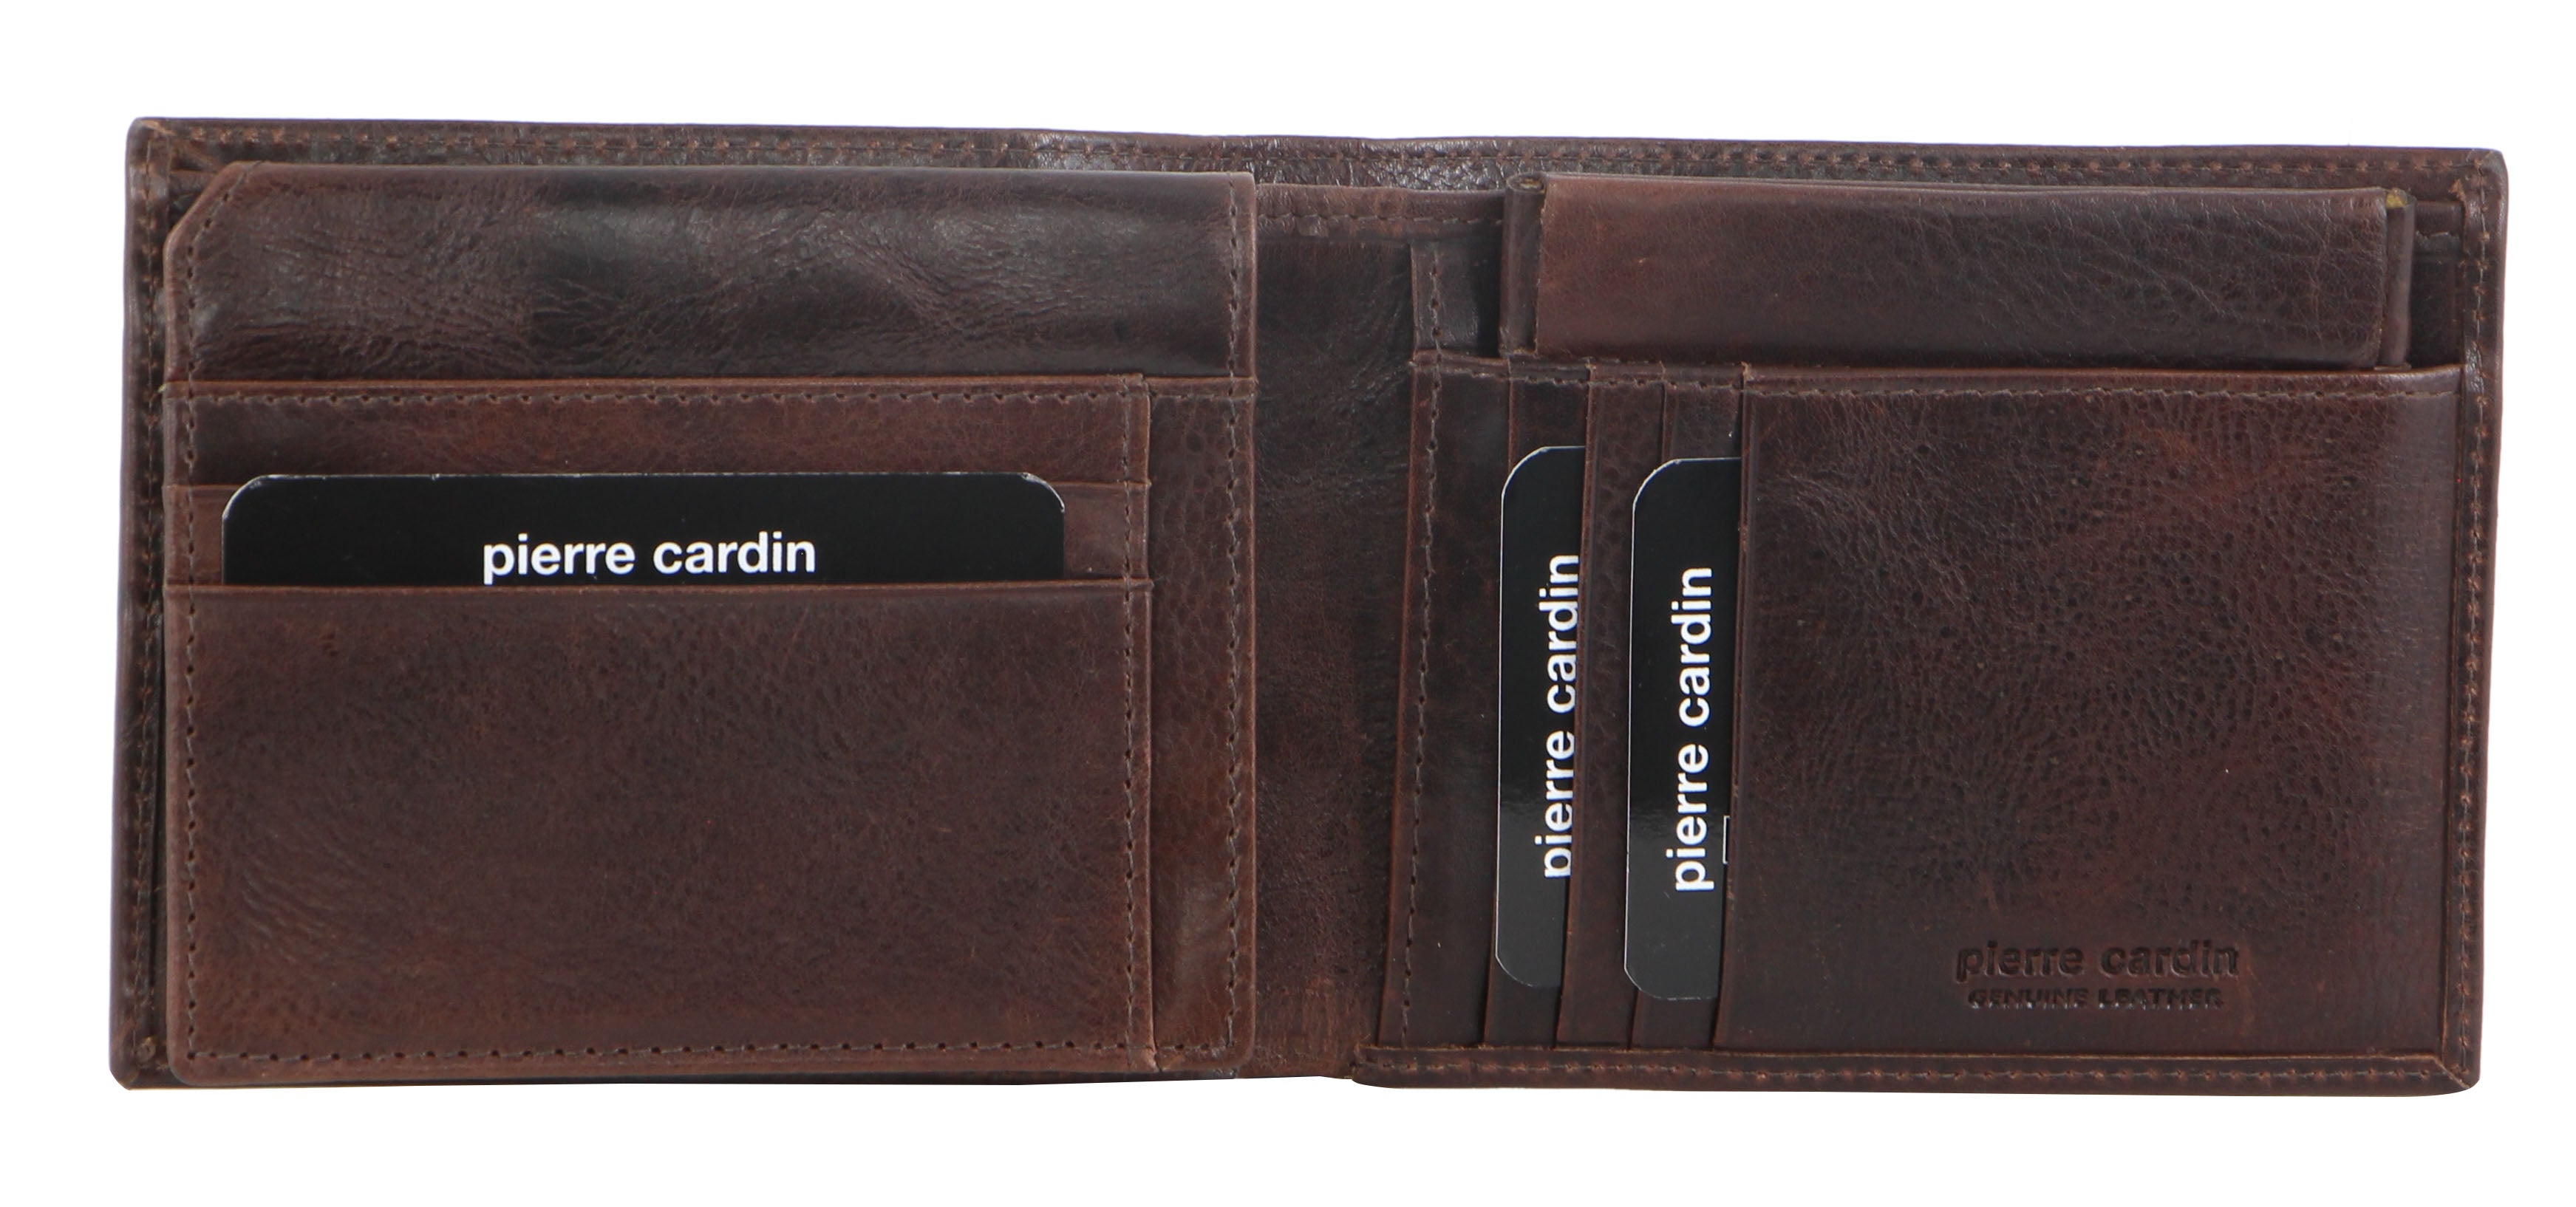 Pierre Cardin Italian Leather Men's Wallet/Card Holder in Black